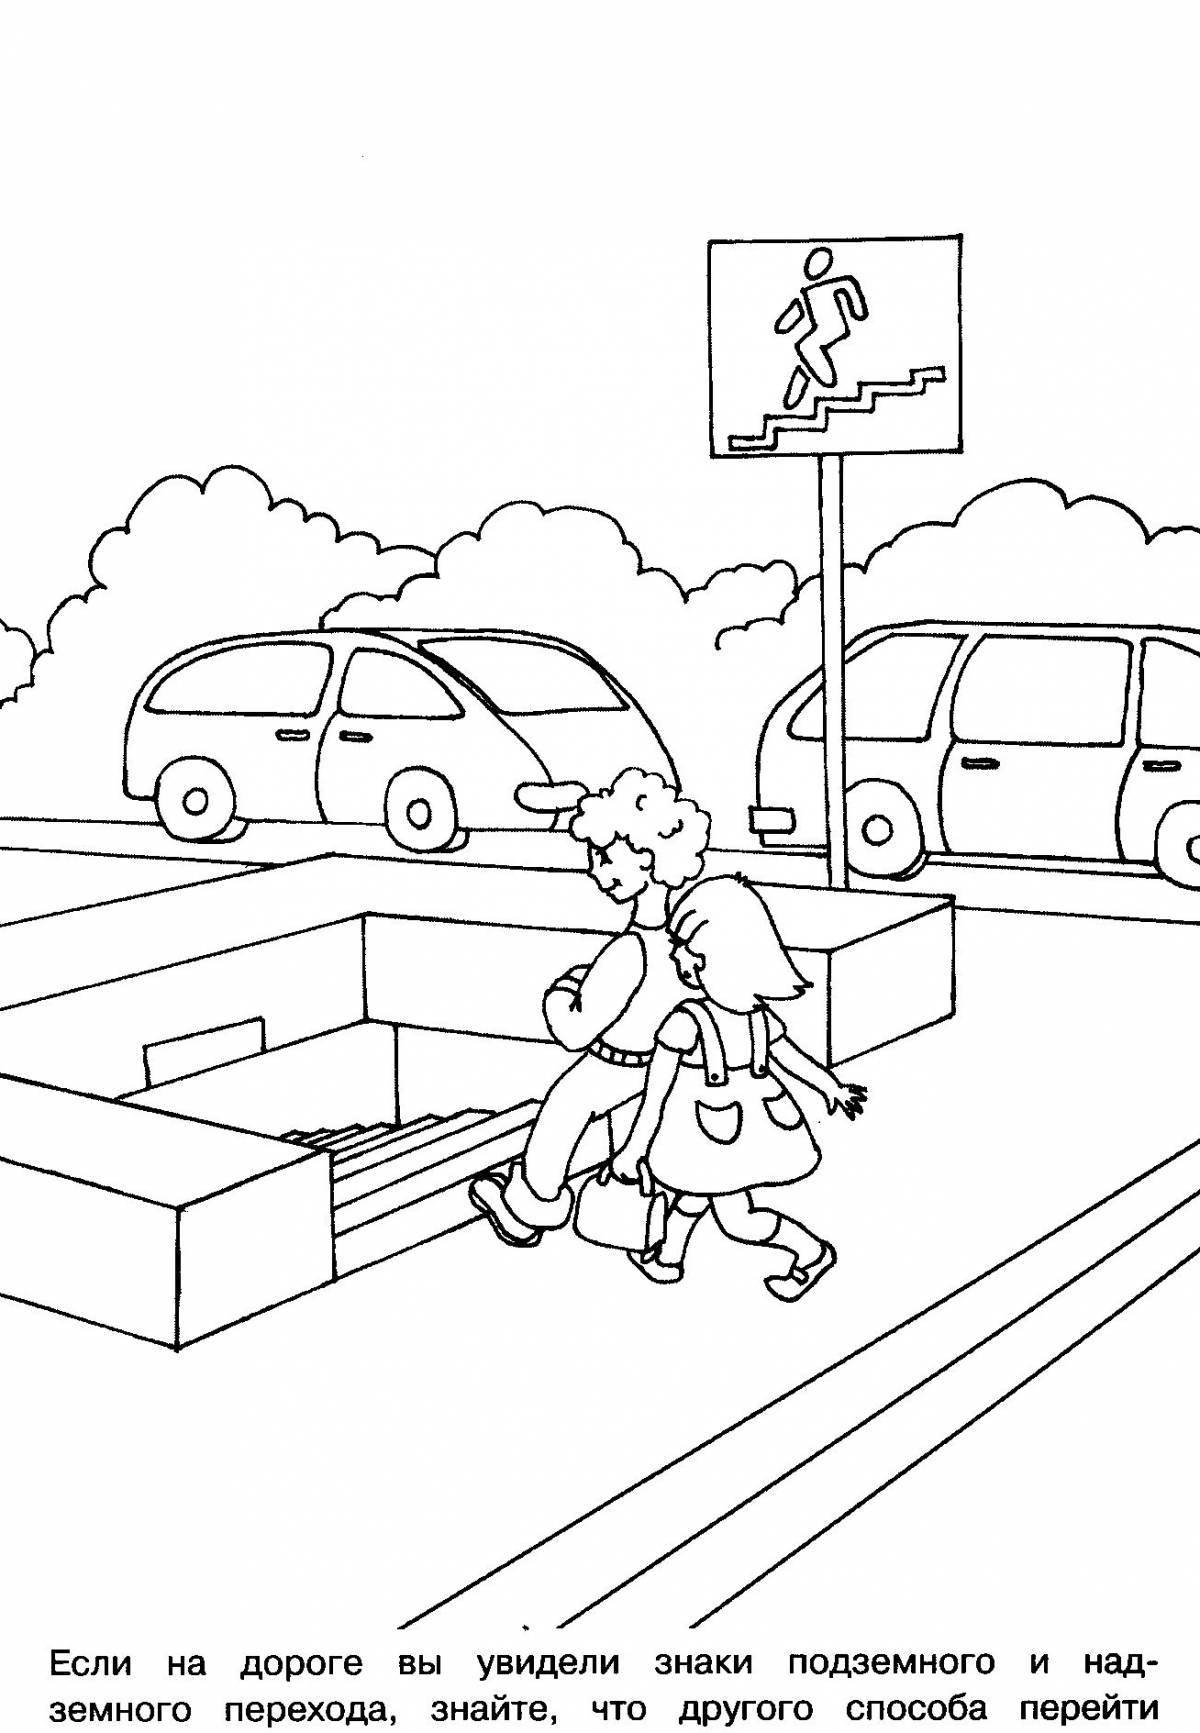 Привлекательная раскраска правила дорожного движения для школьников